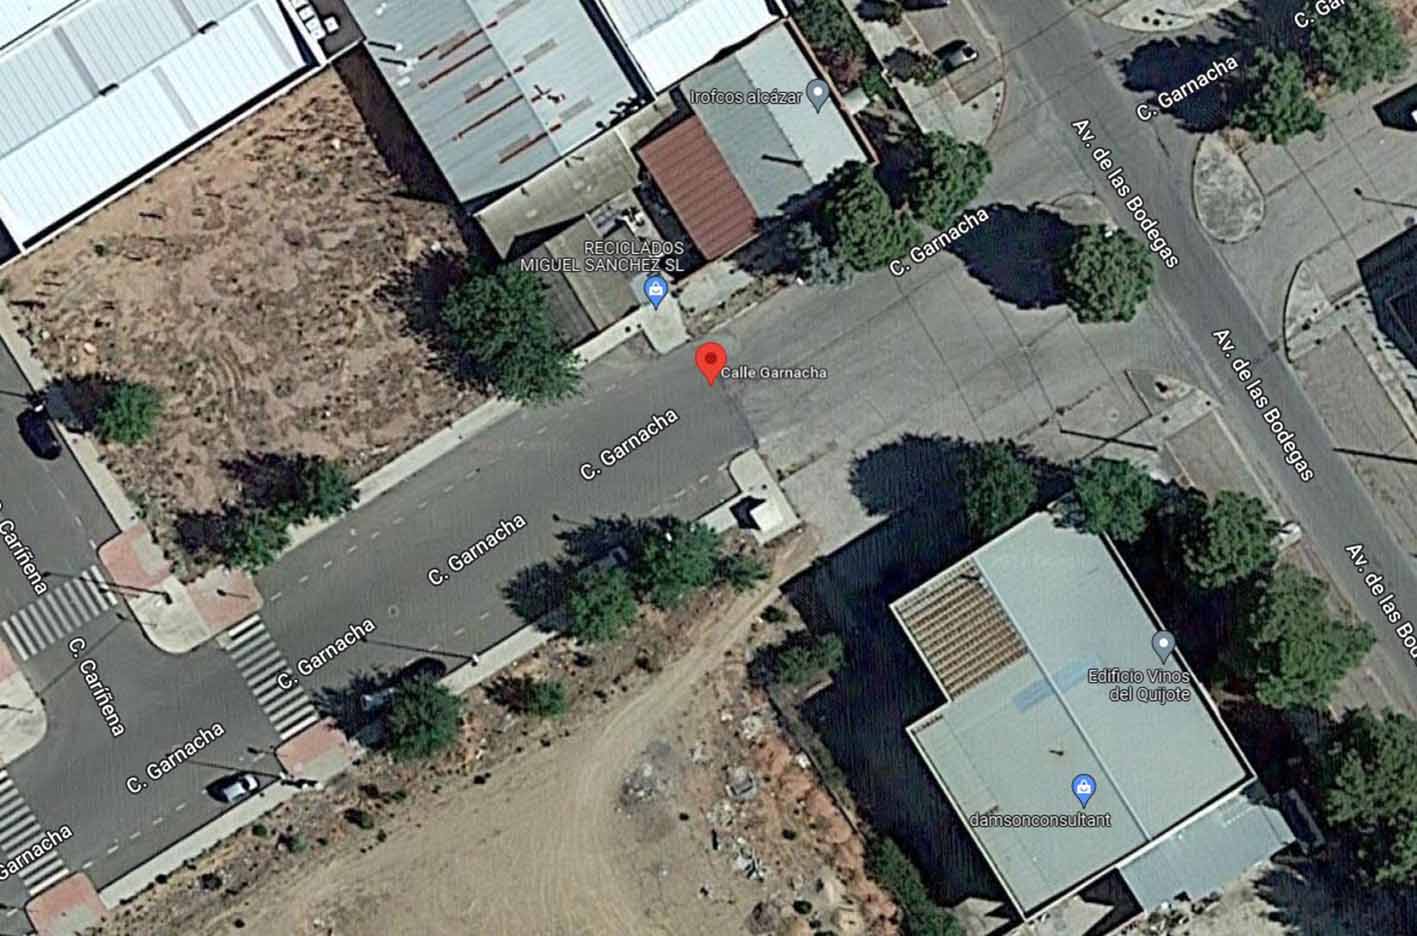 Calle Garnacha de Alcázar, donde una mujer ha muerto en un accidente dentro de una empresa. Imagen: Google Maps.